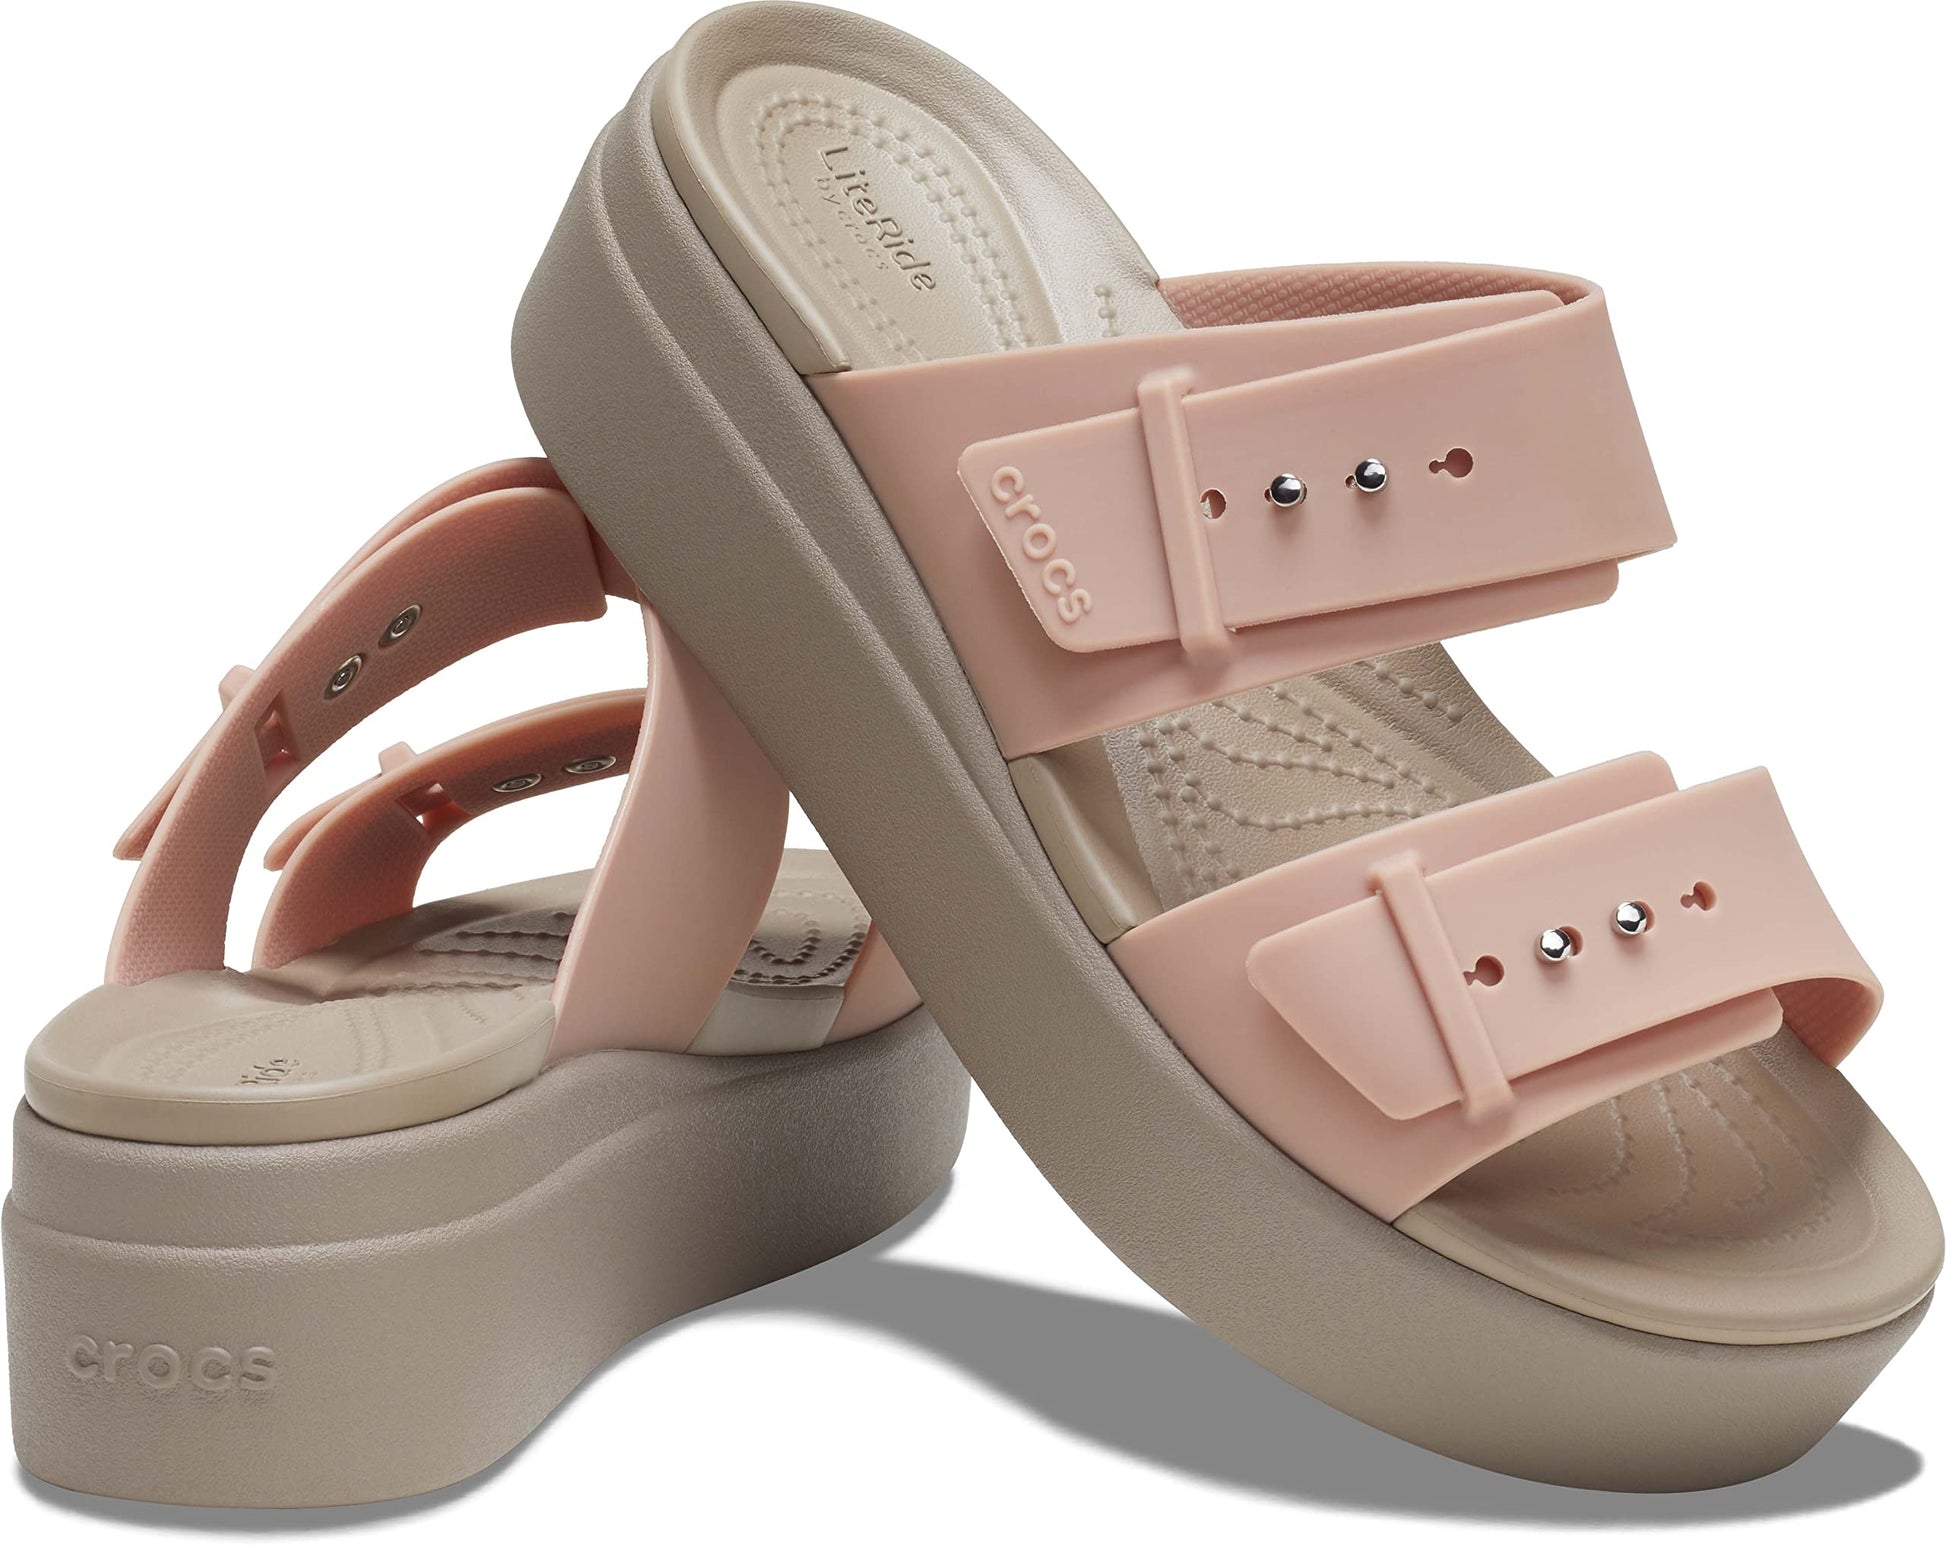 Crocs Women Pale Blush Brooklyn Sandal 